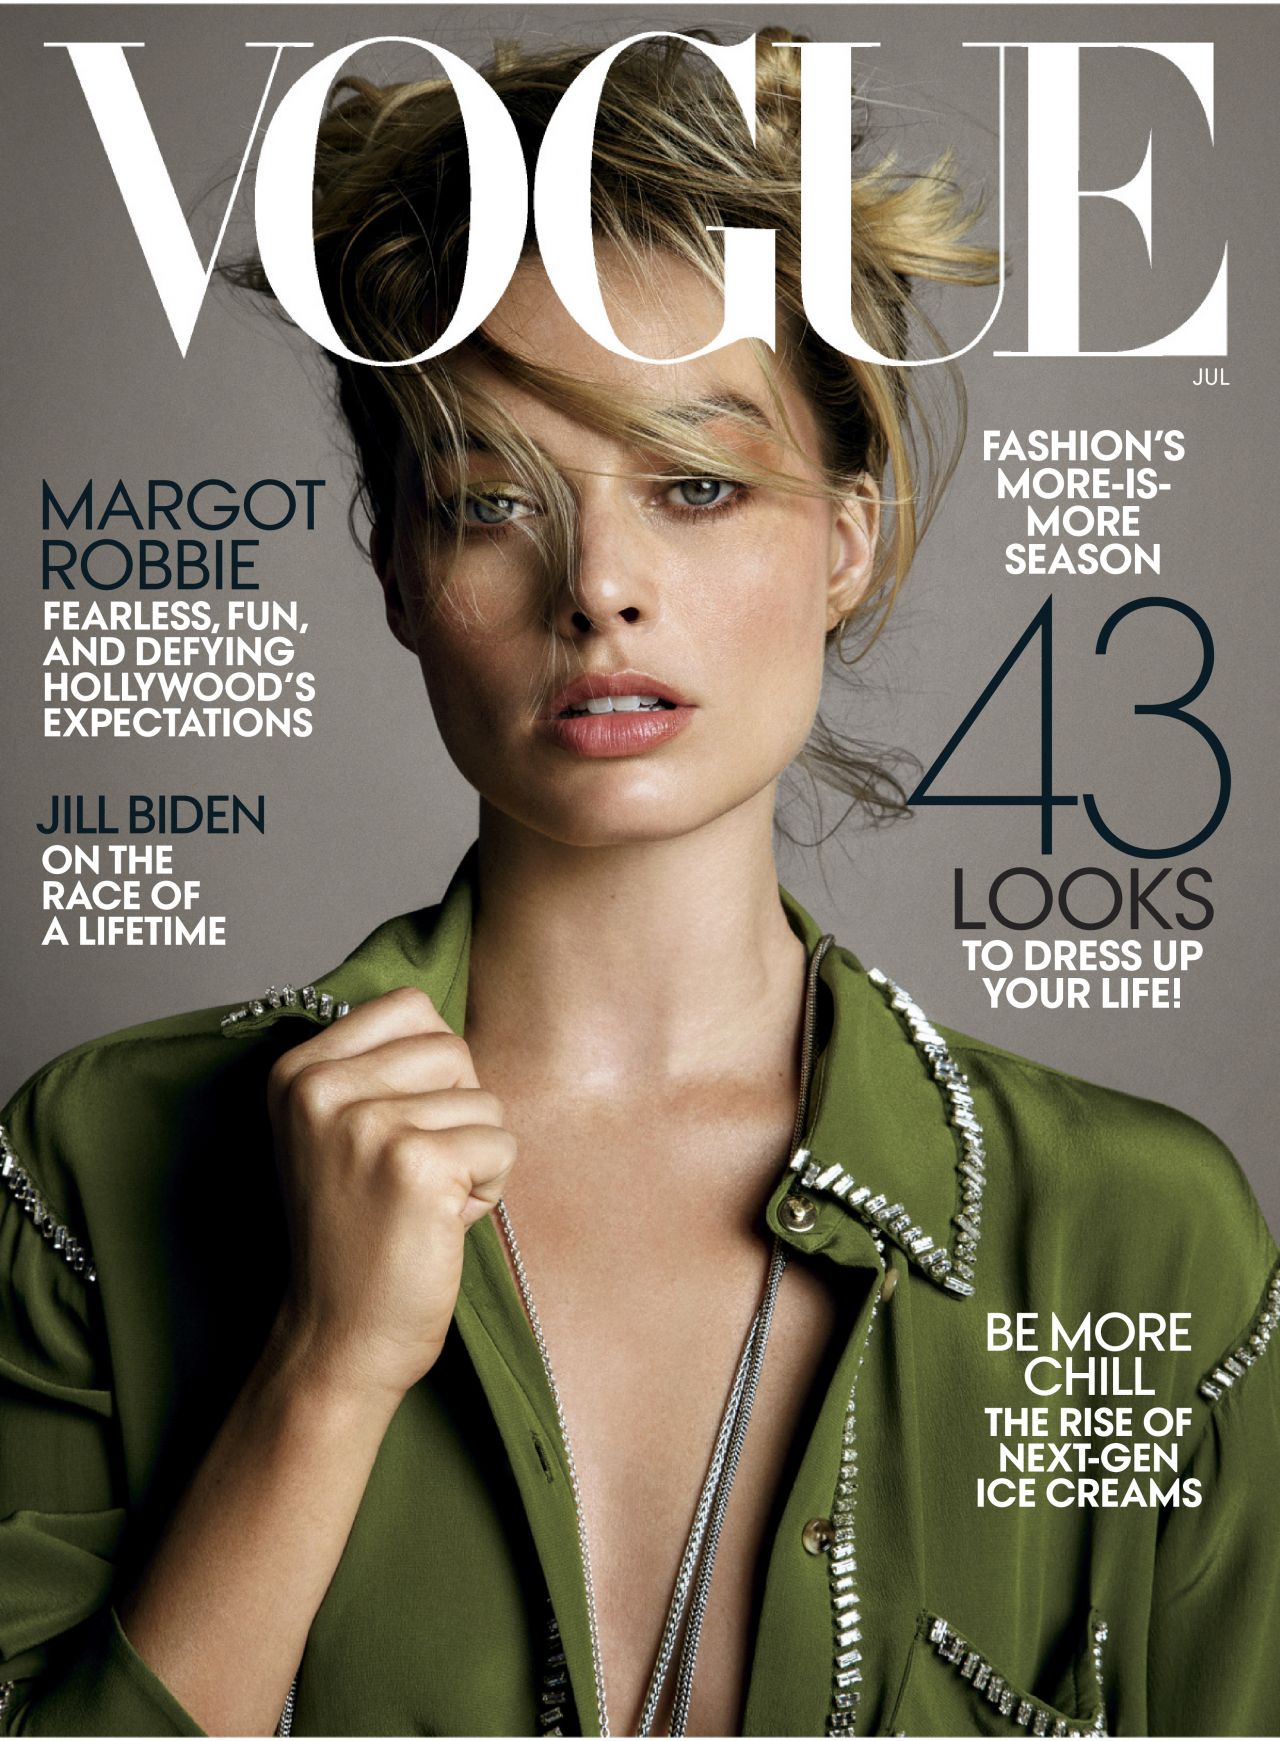 Margot Robbie Vogue Magazine July 2019 Issue 12 